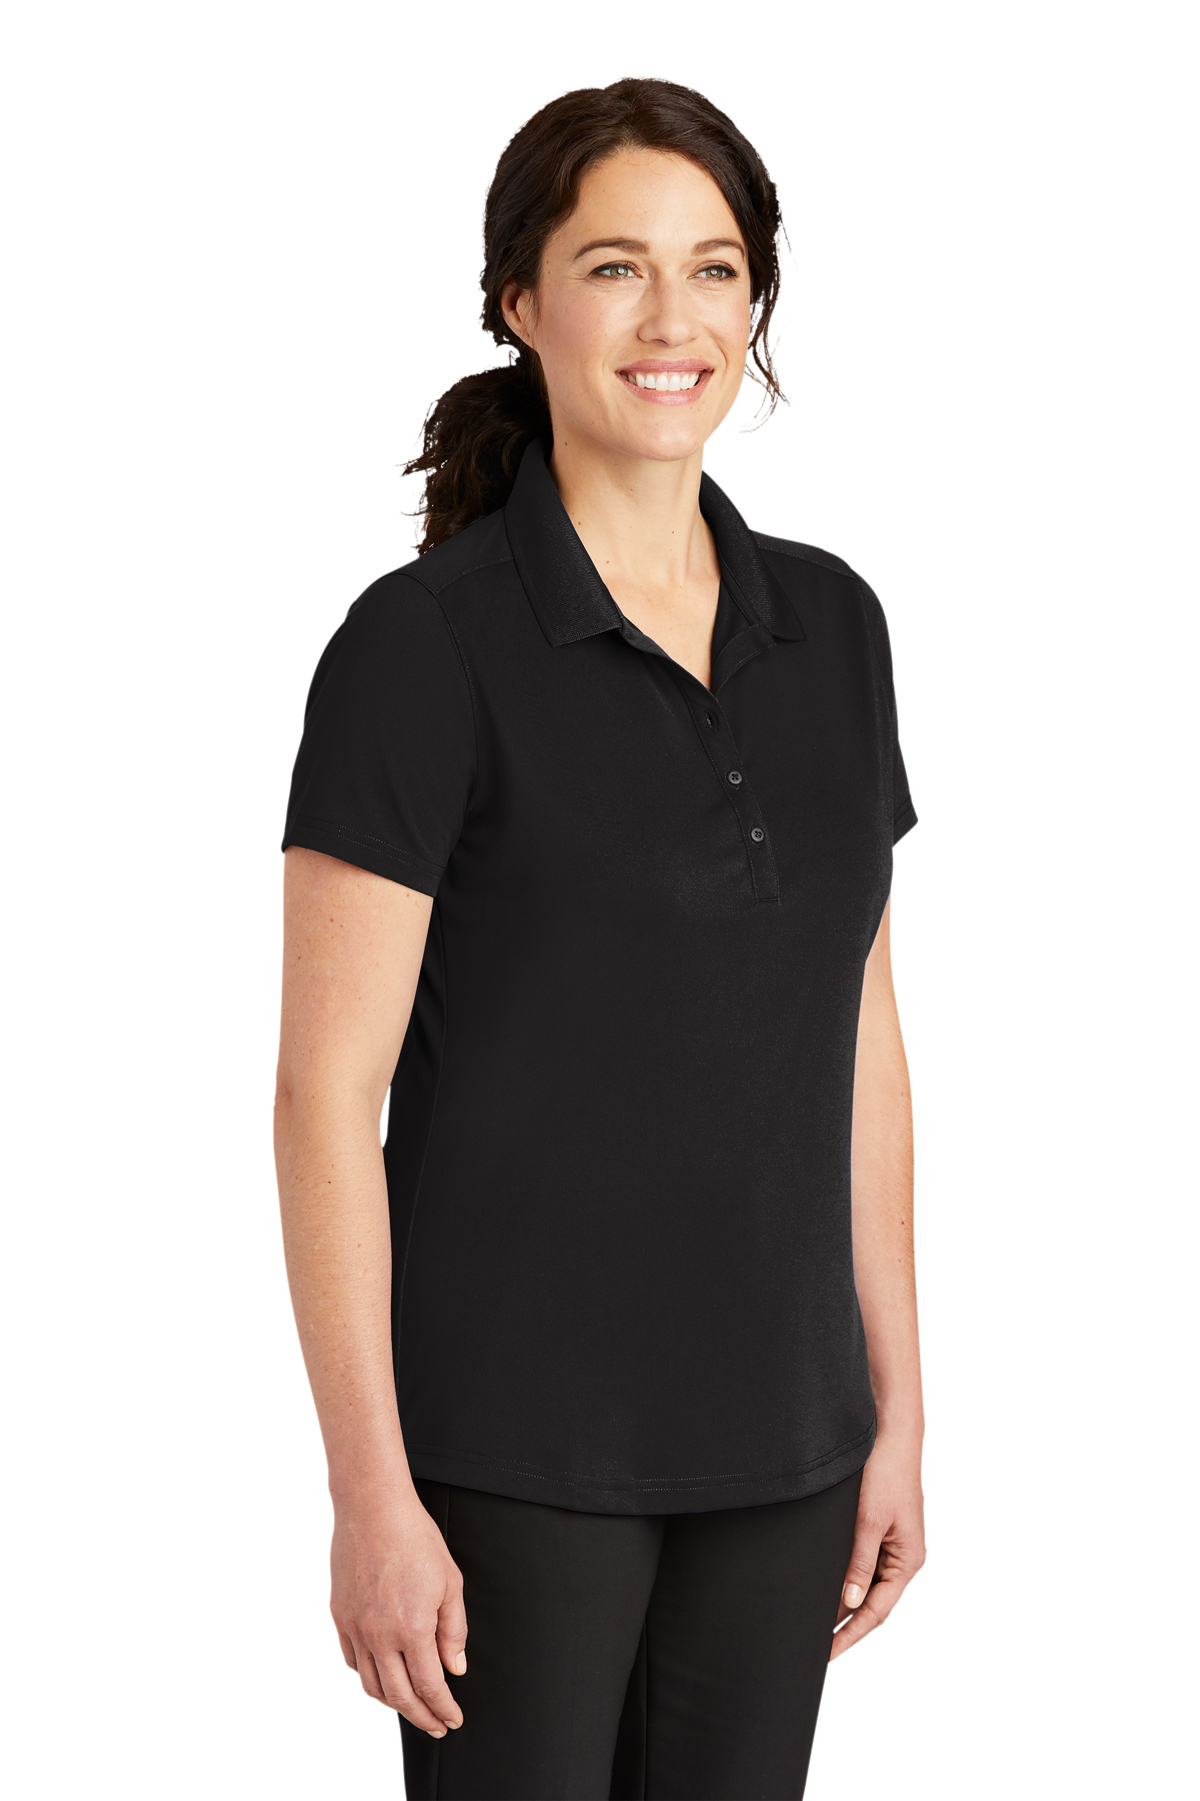 U S POLO ASSN plain black full sleeve shirt - G3-MCS11448 